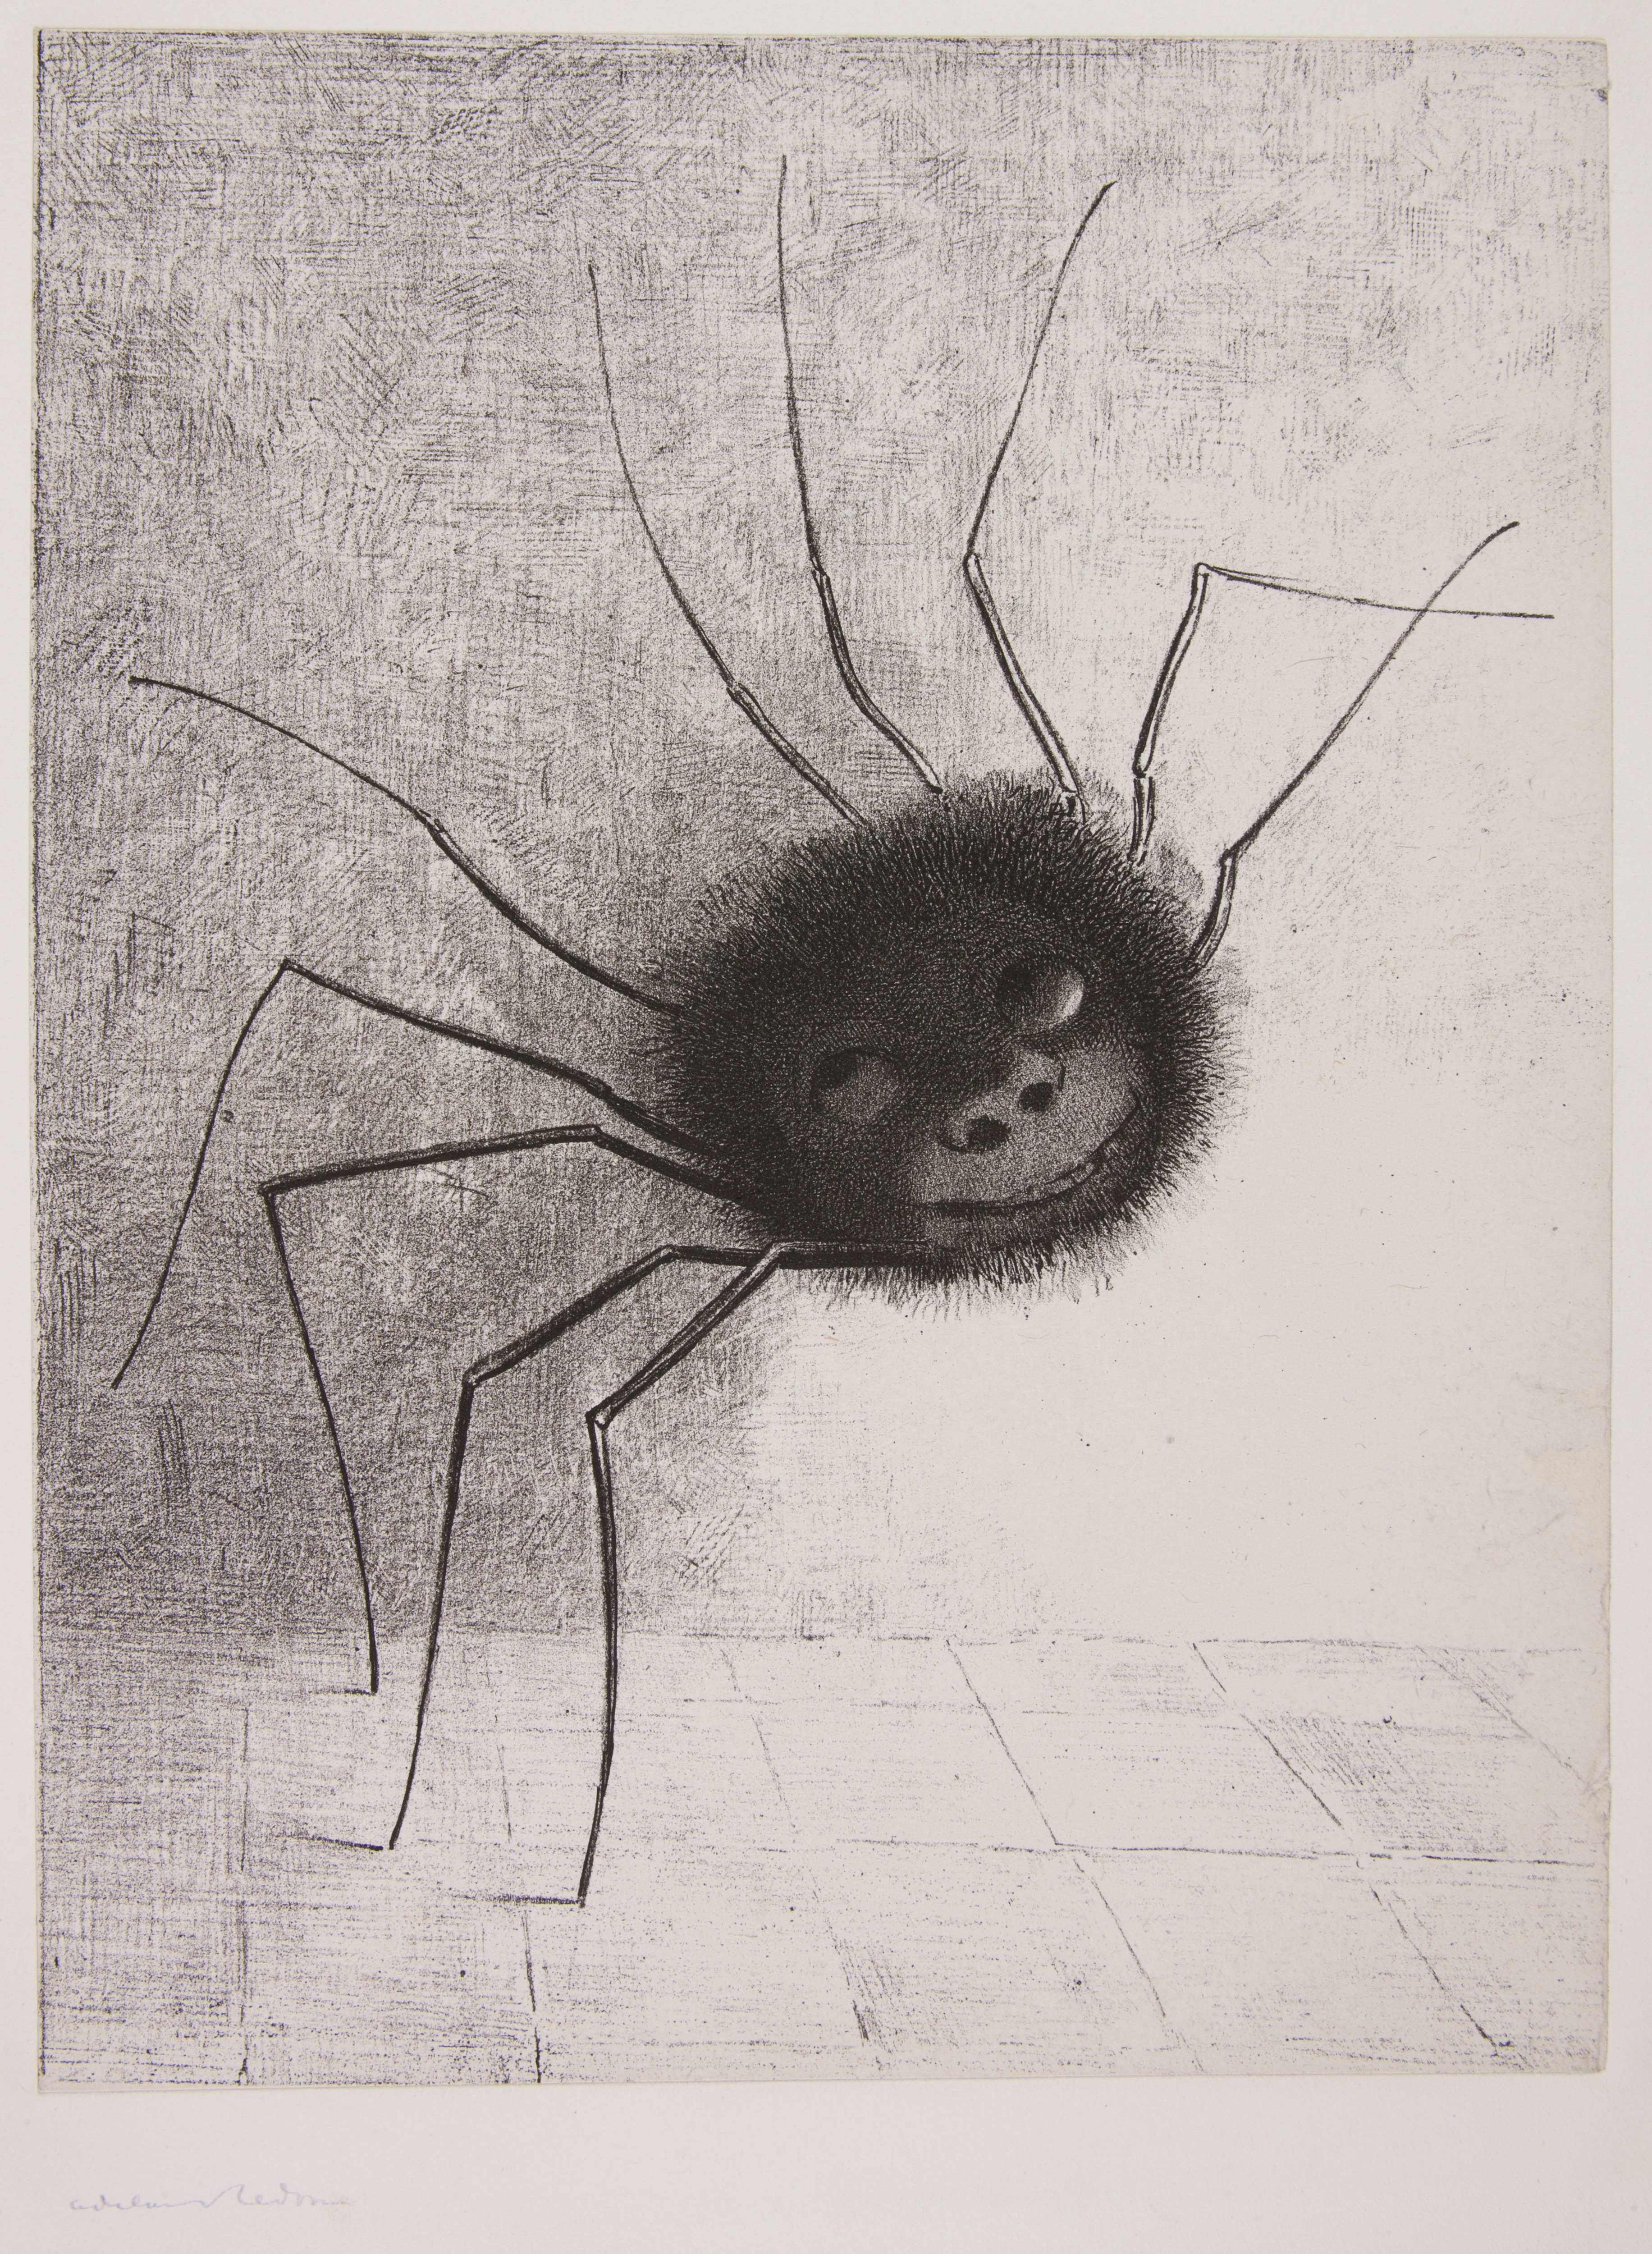 Pavouk by Odilon Redon - 1887 - -- 